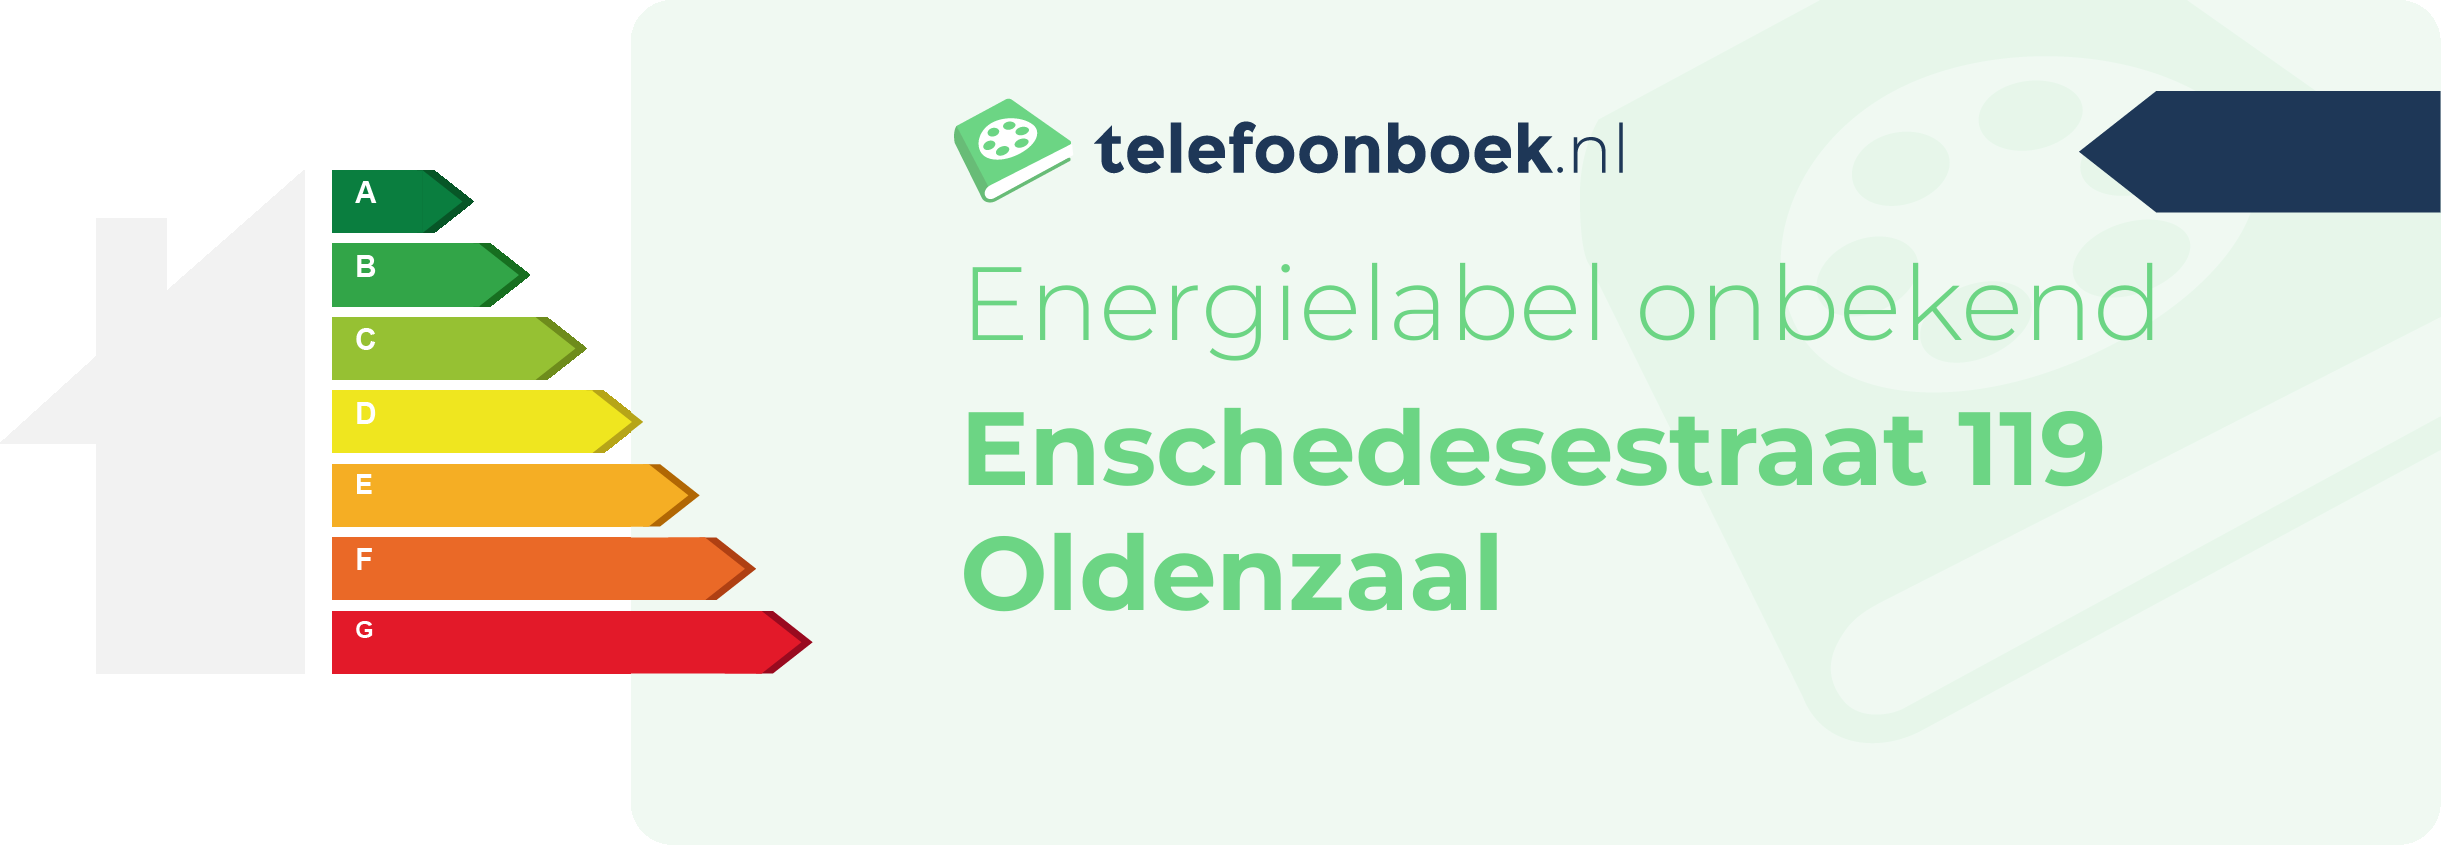 Energielabel Enschedesestraat 119 Oldenzaal